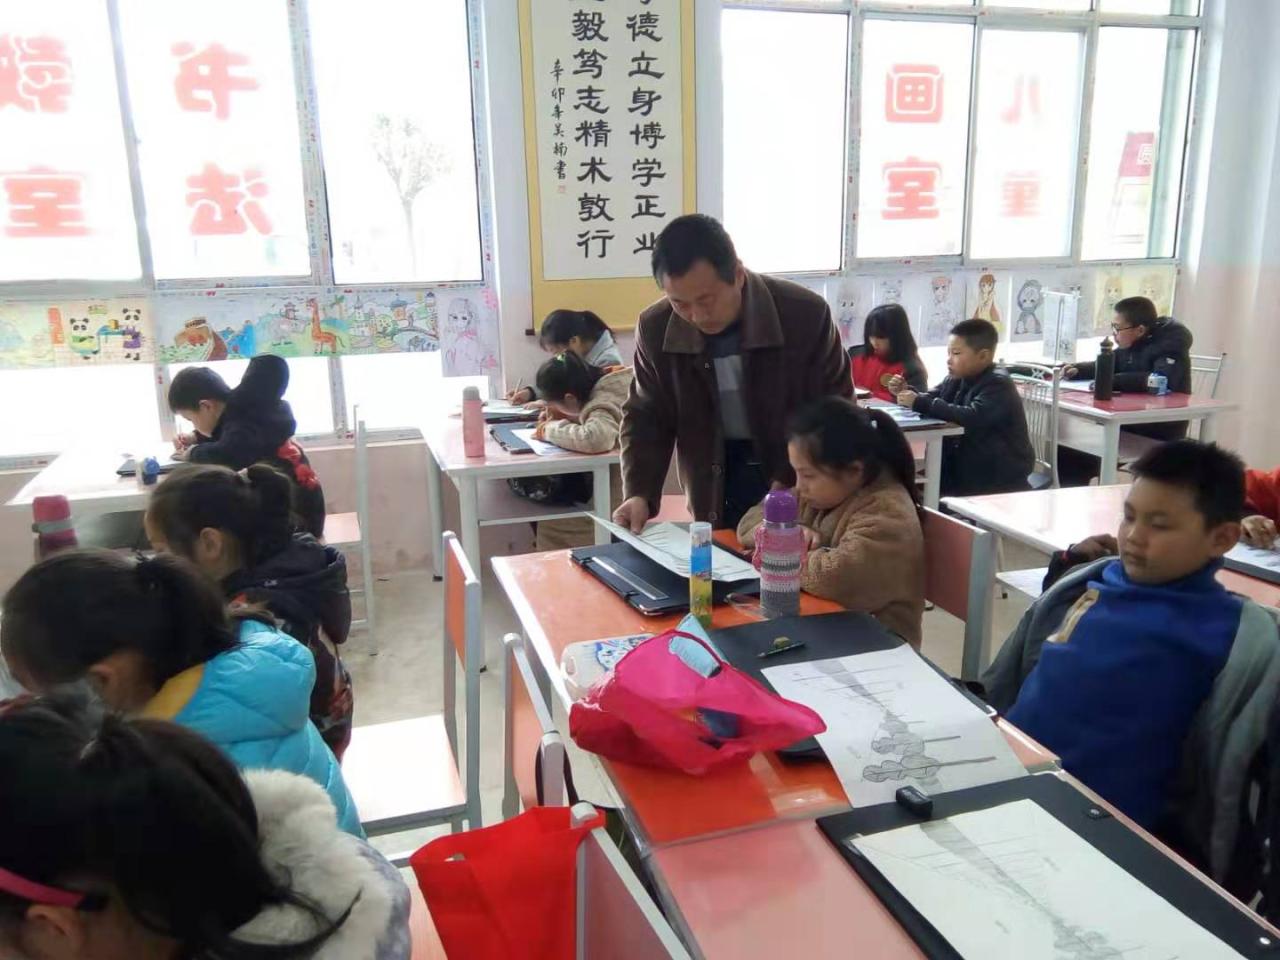 老师正在辅导一部初级班的学生的课堂作业